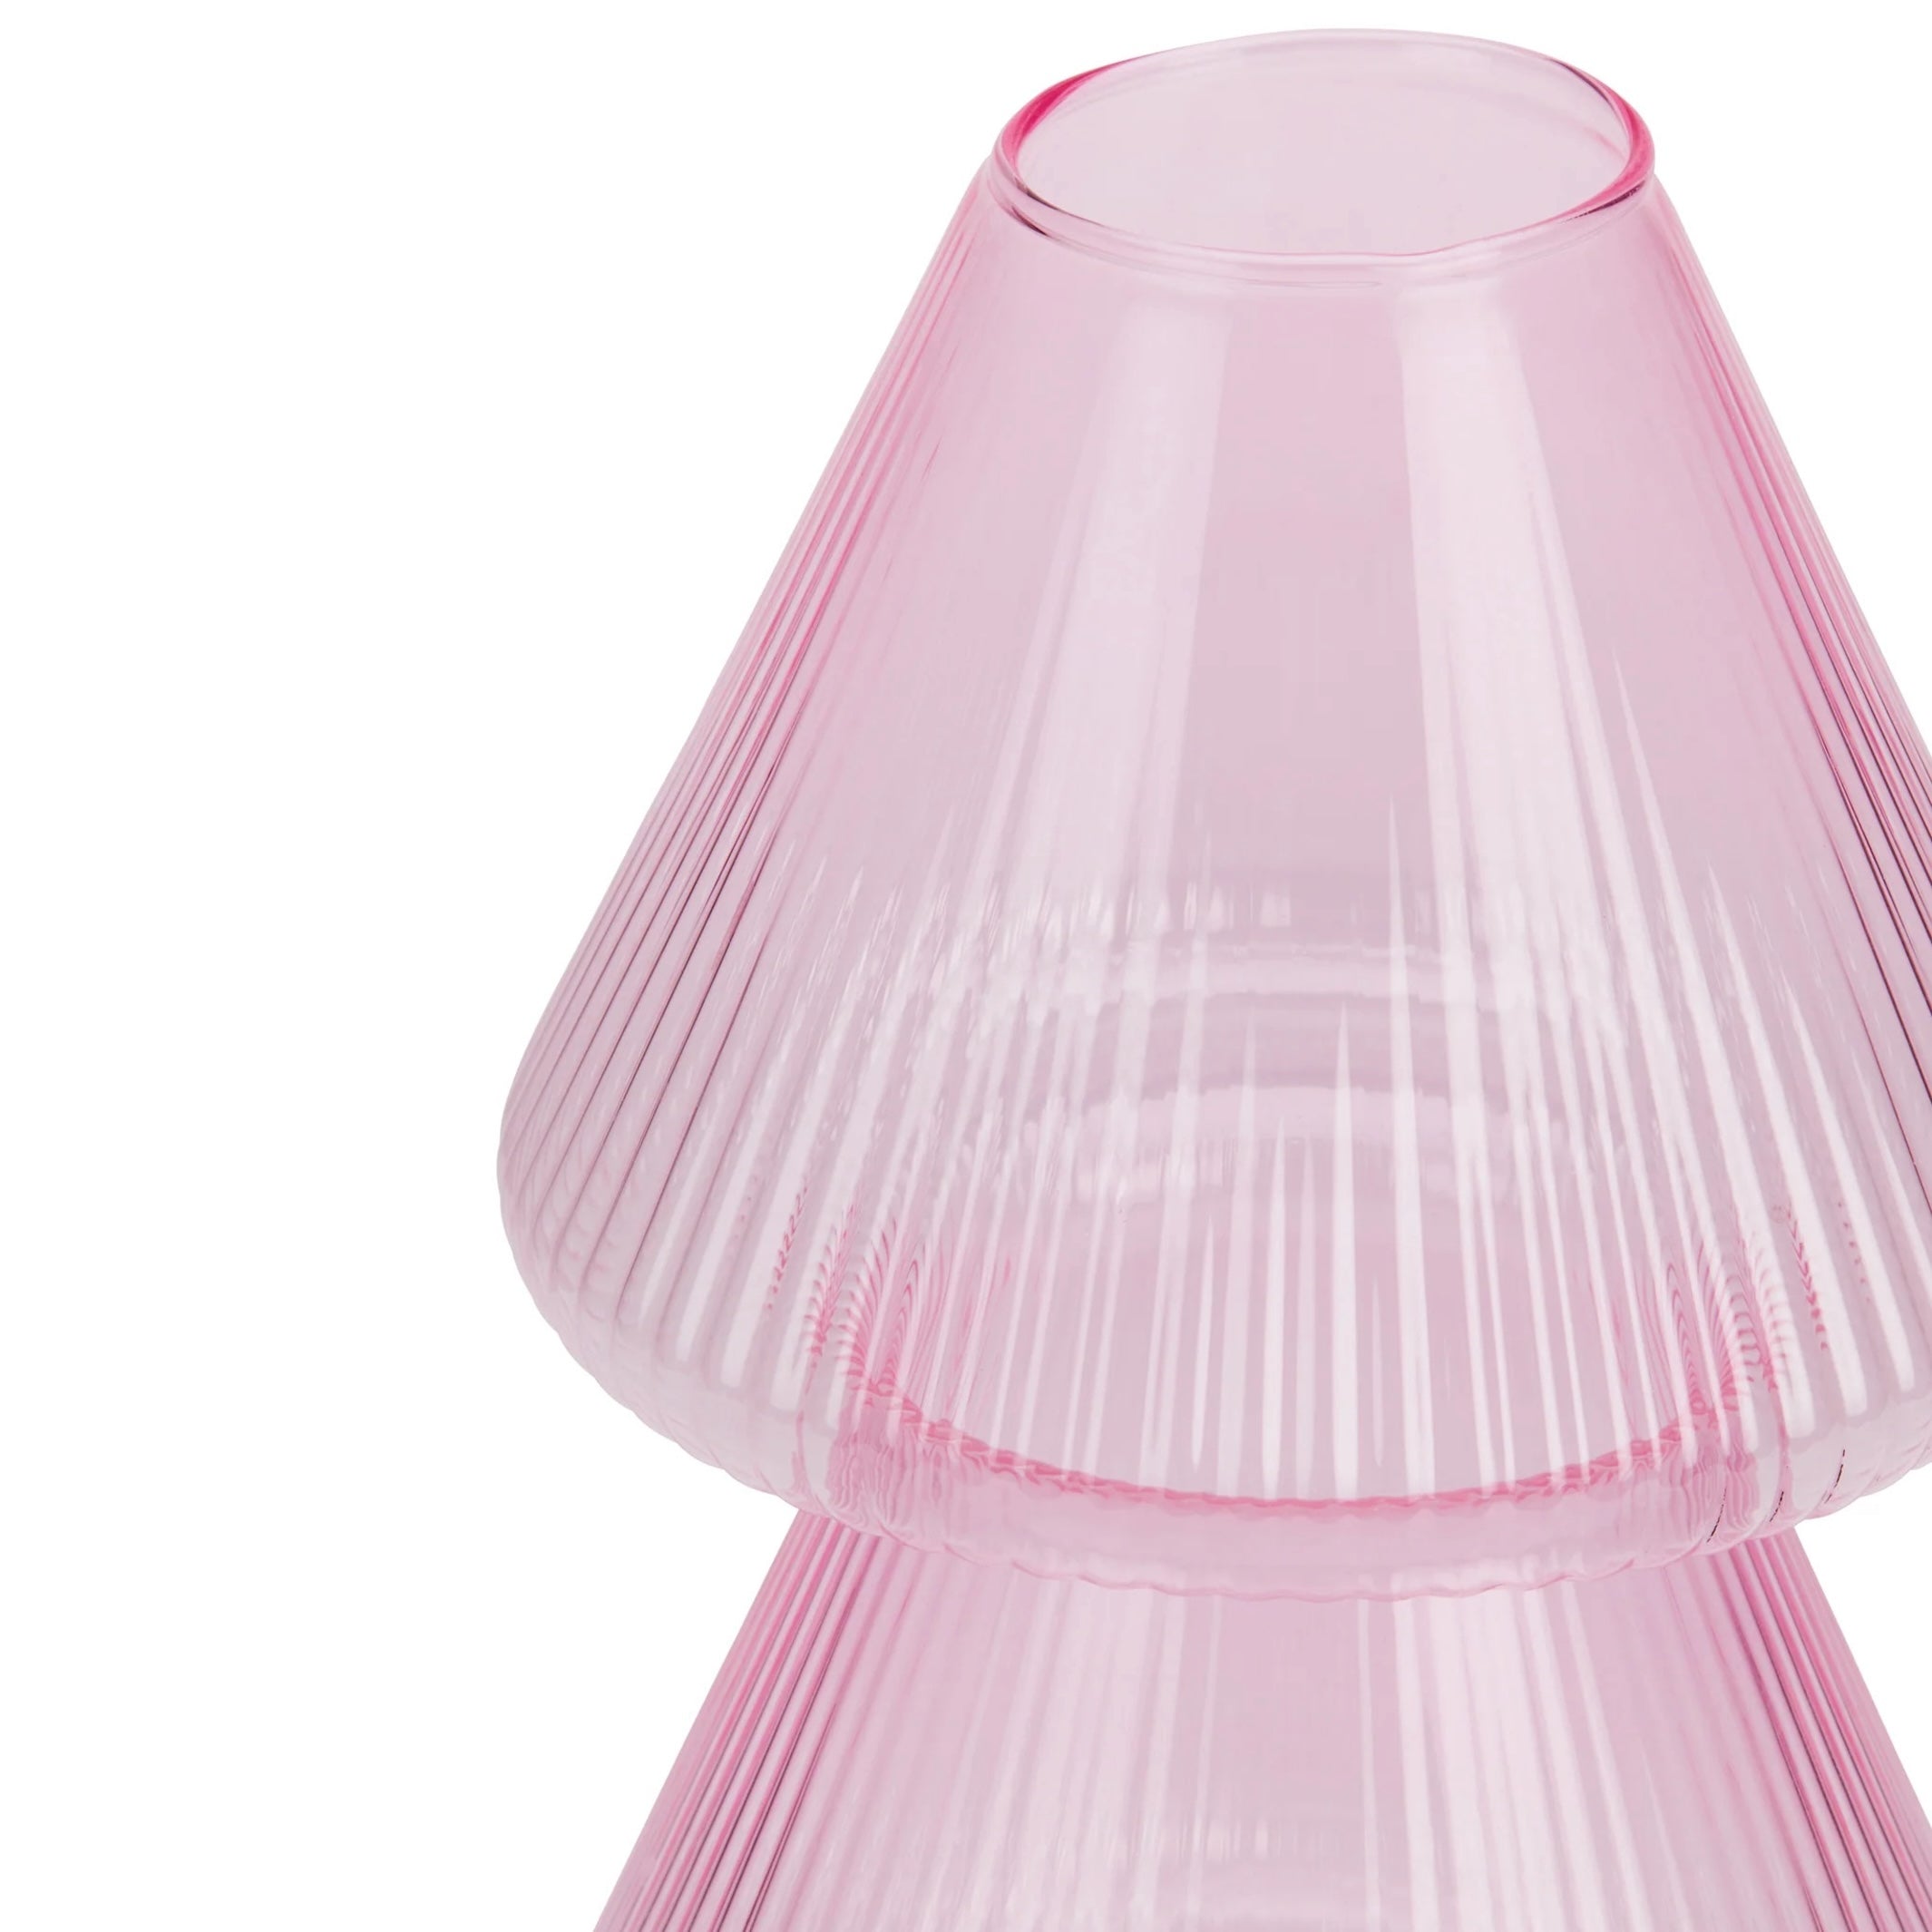 Yinka Ilori Oorun Didun Glass Vase - Pink